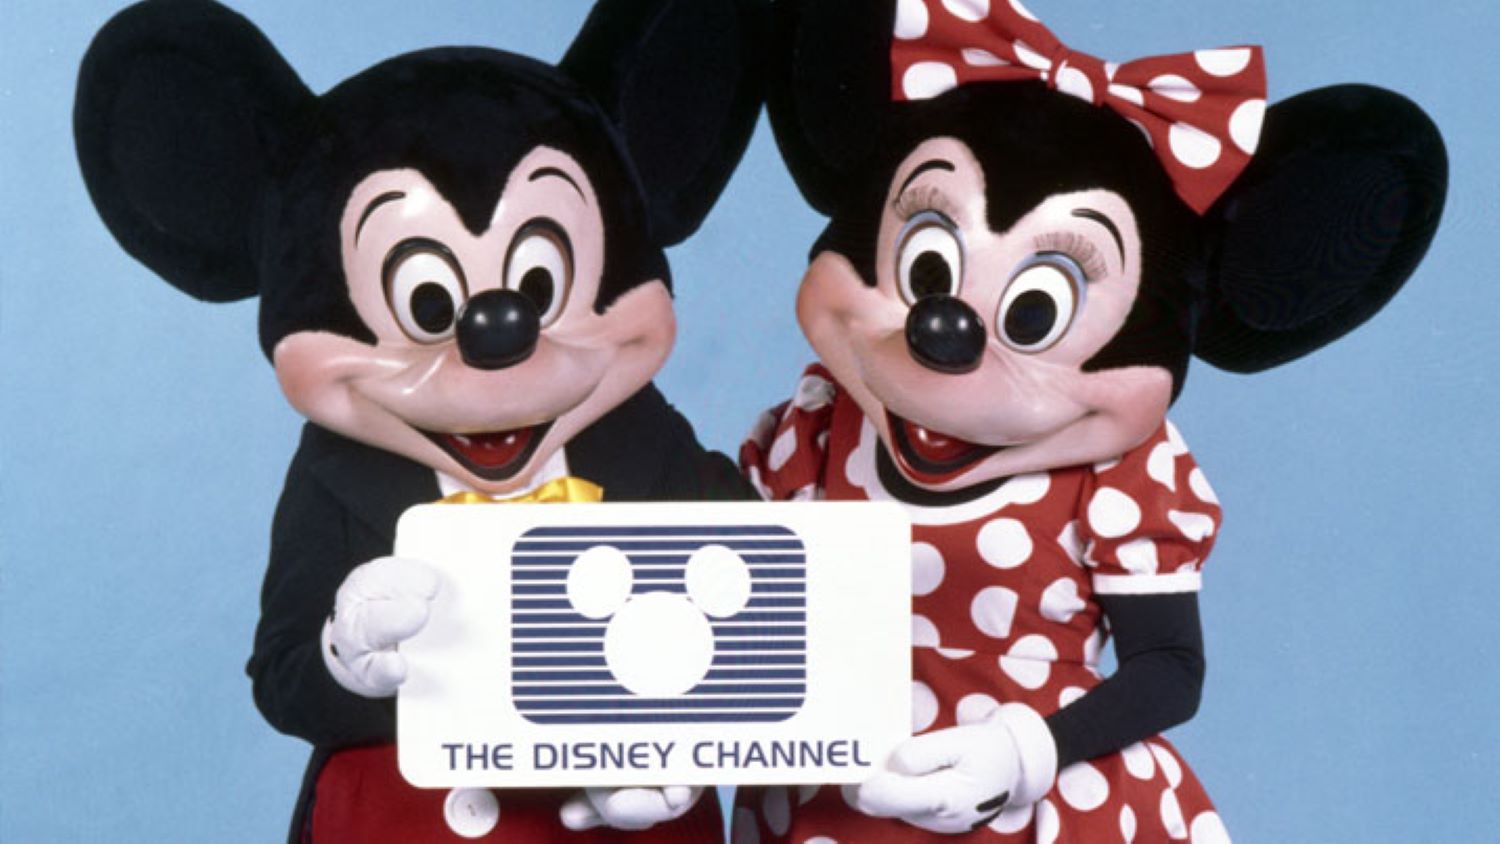 Disney initial logo